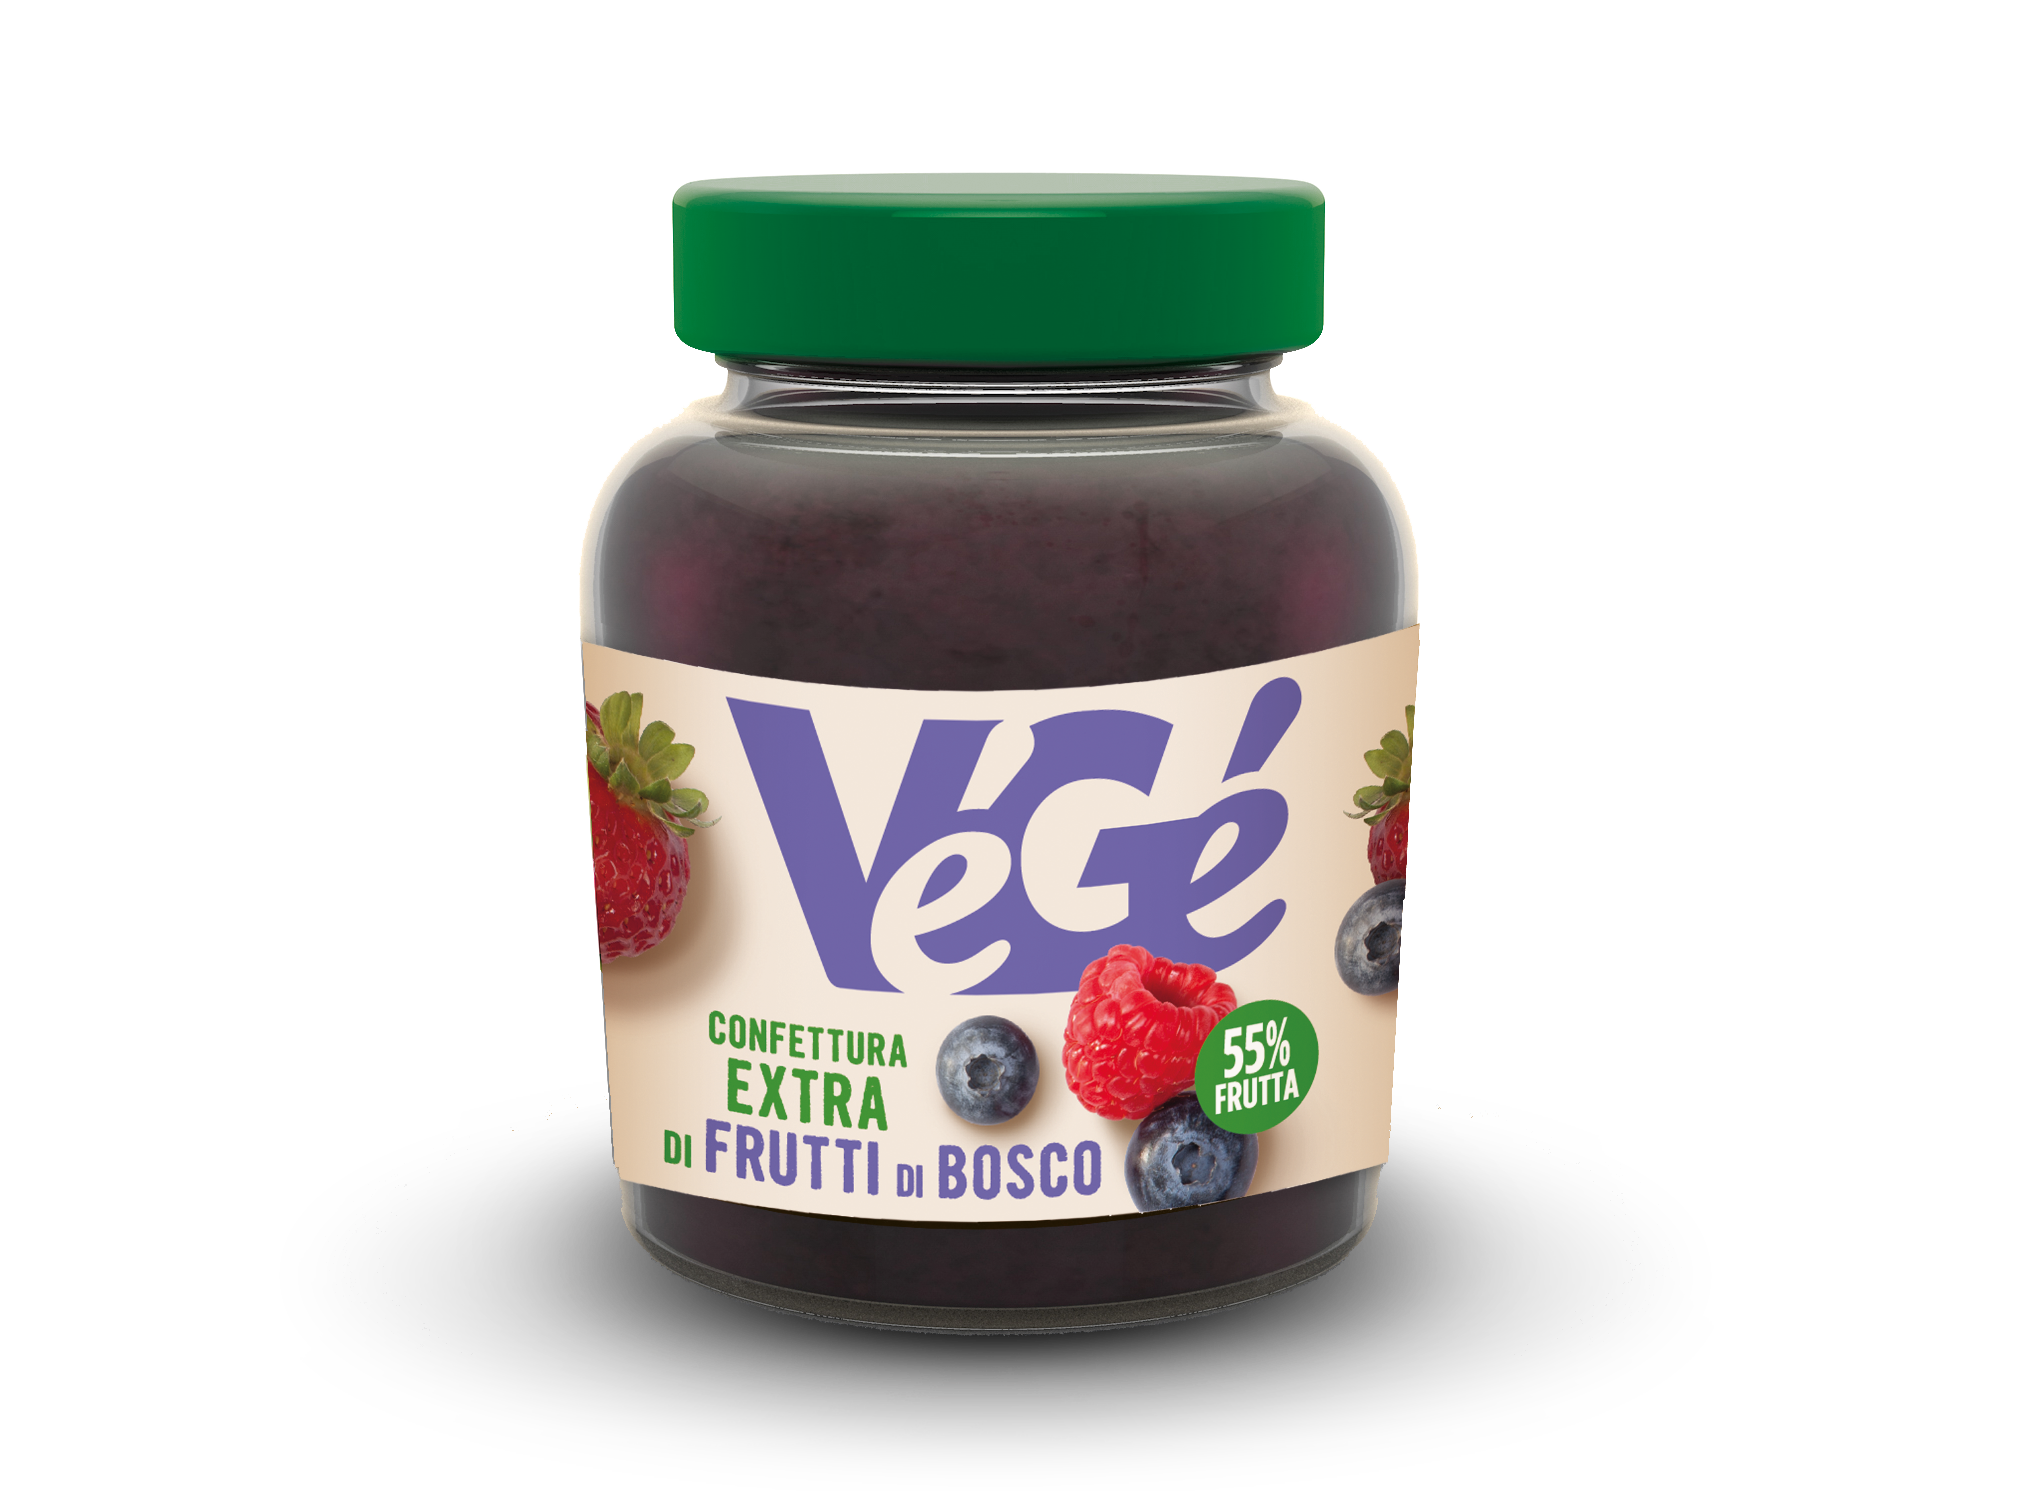 Confettura extra di frutti di bosco Vegé GDO (Grande Distribuzione Organizzata)